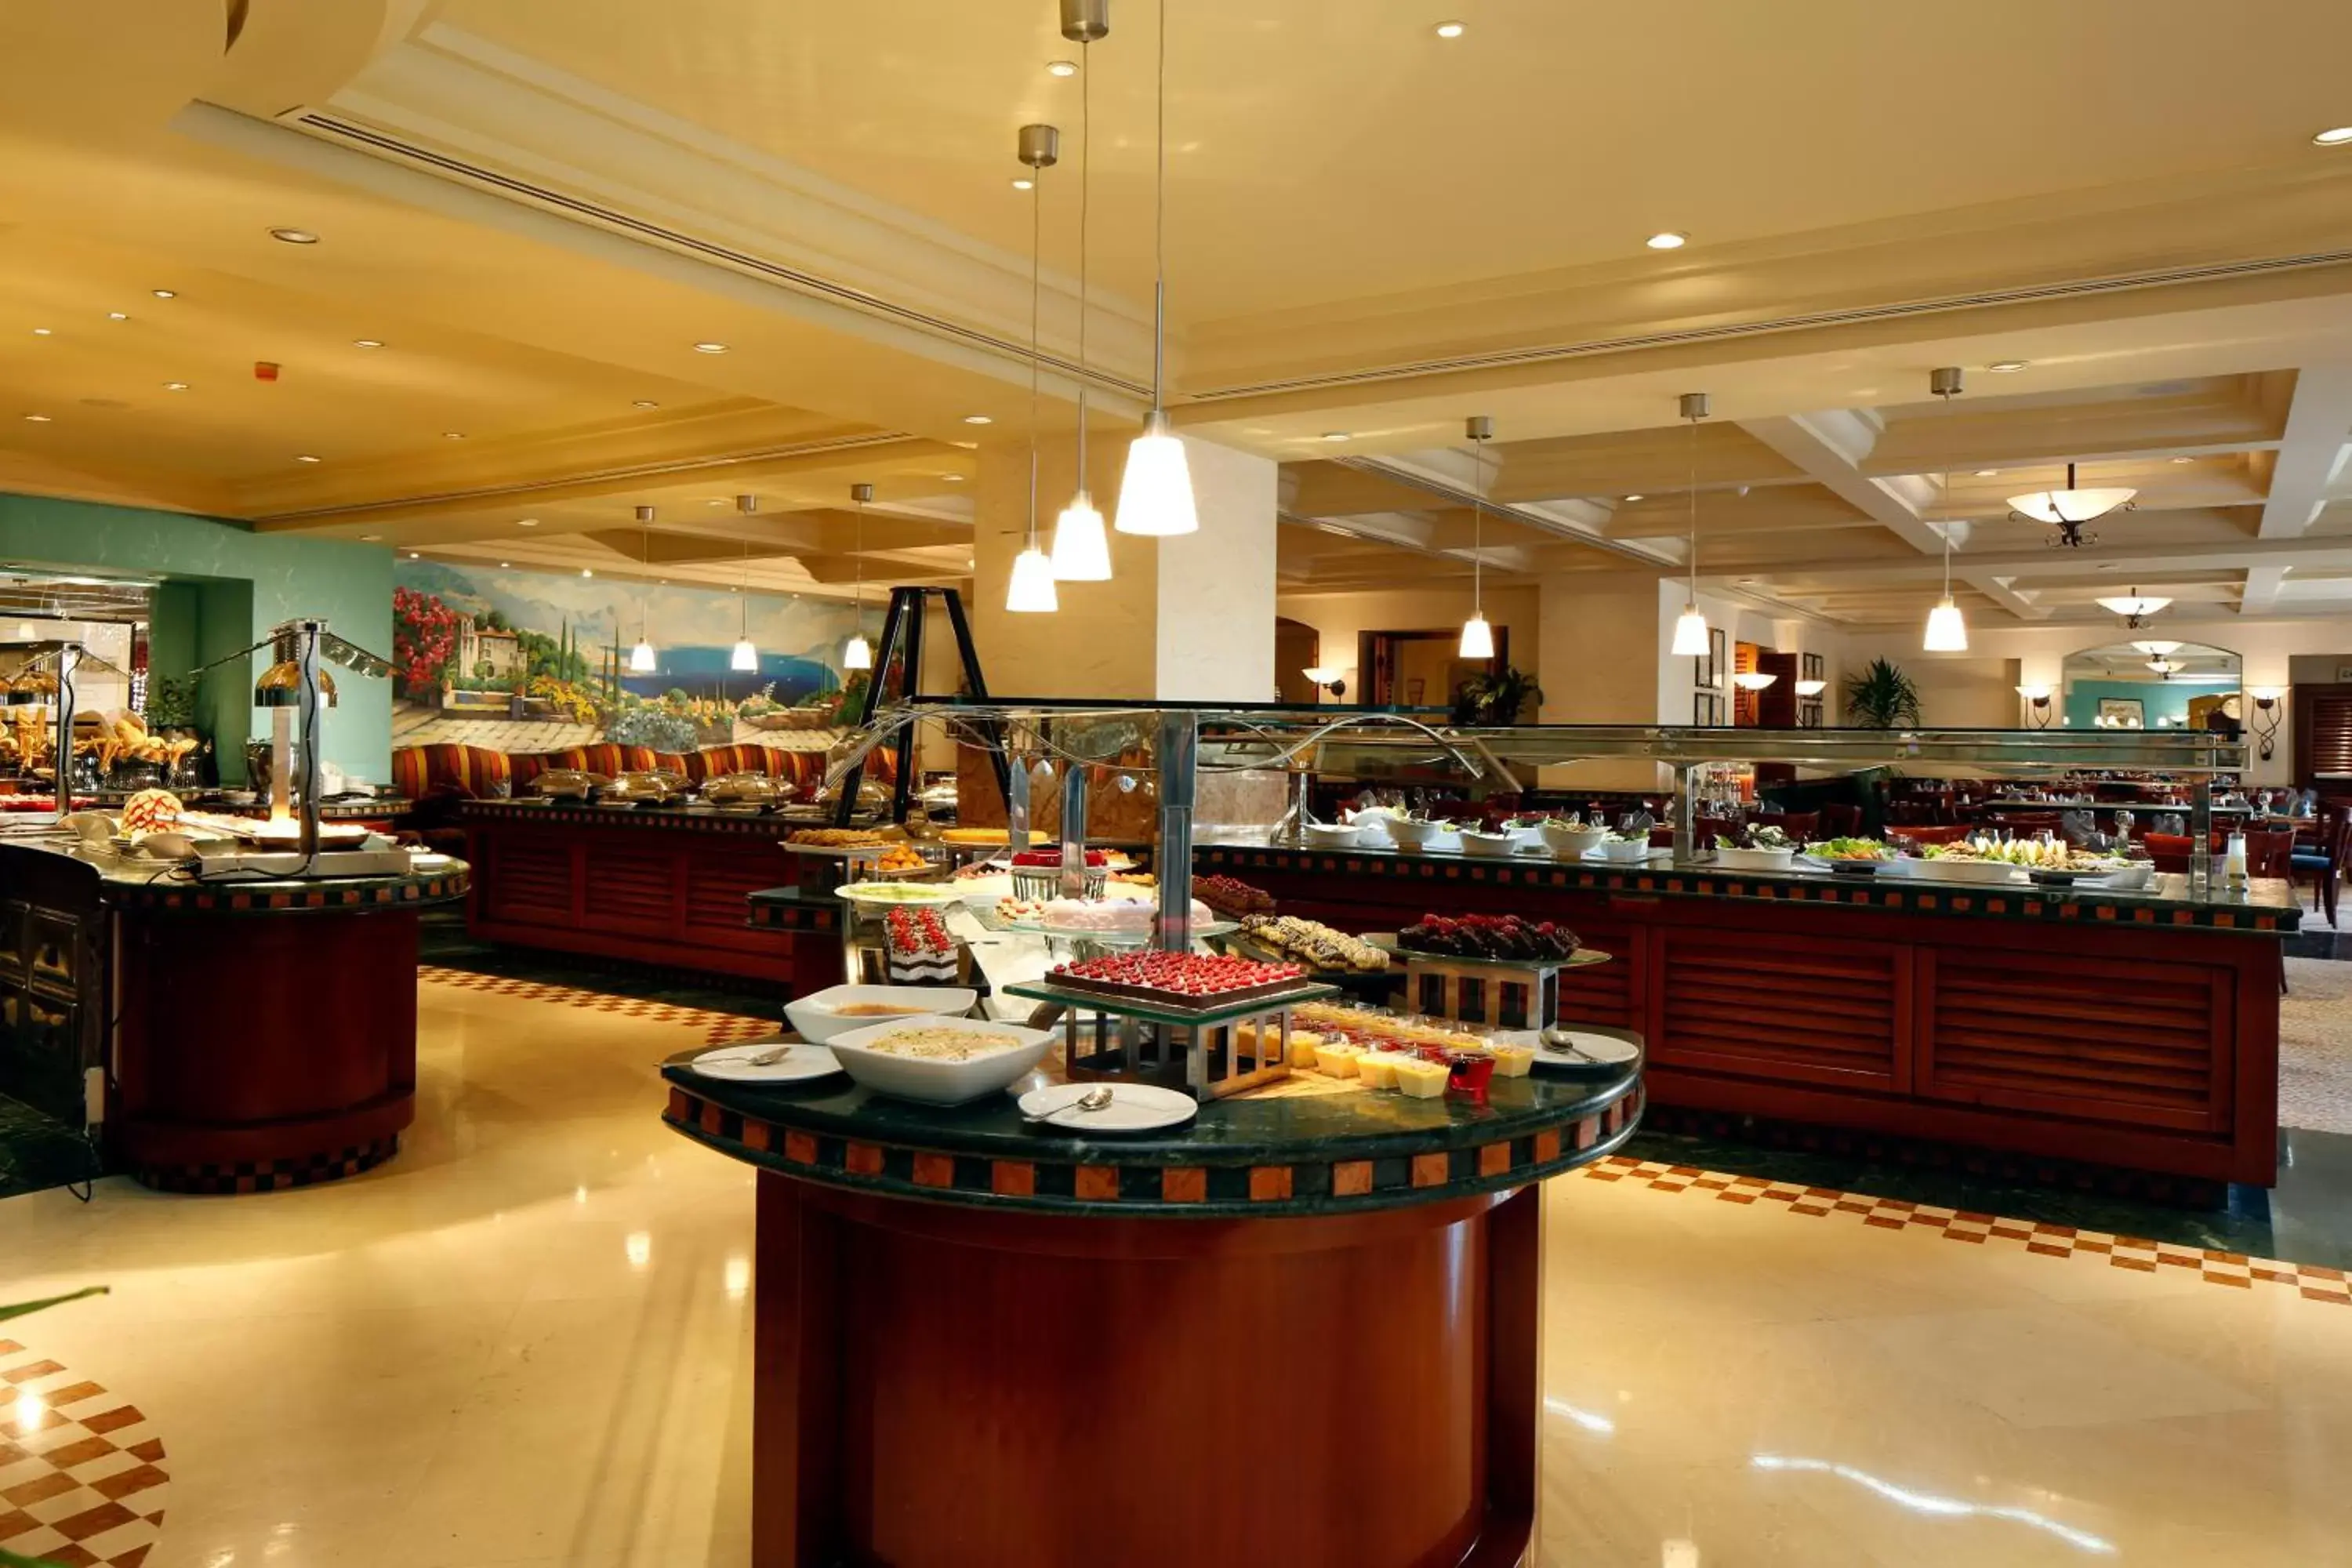 Restaurant/Places to Eat in Radisson Blu Hotel, Riyadh